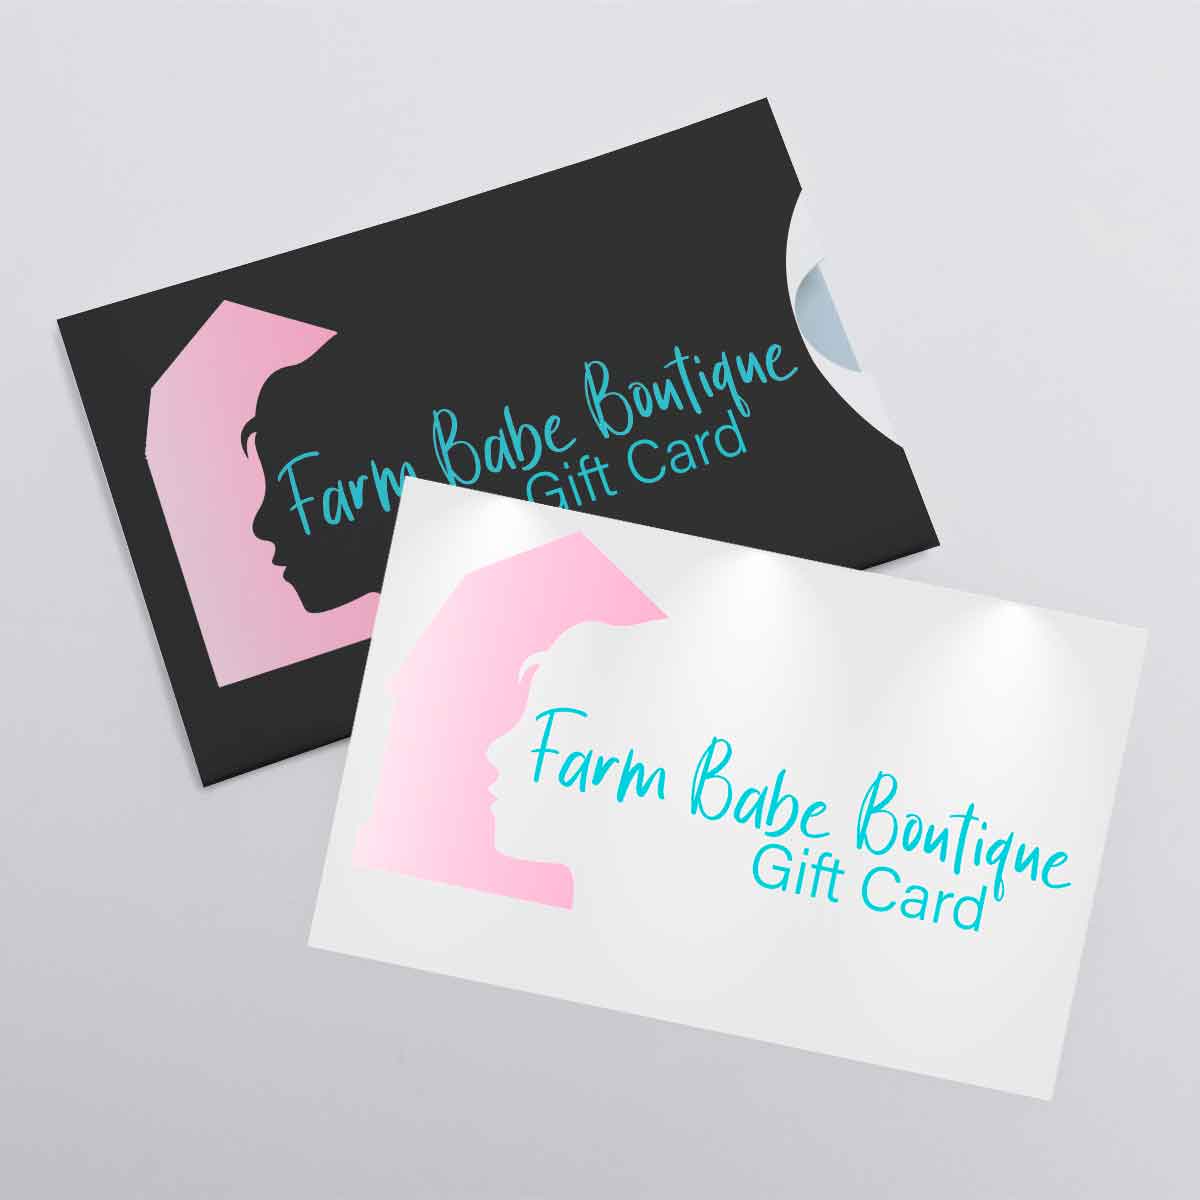 Farm Babe Boutique Gift Card